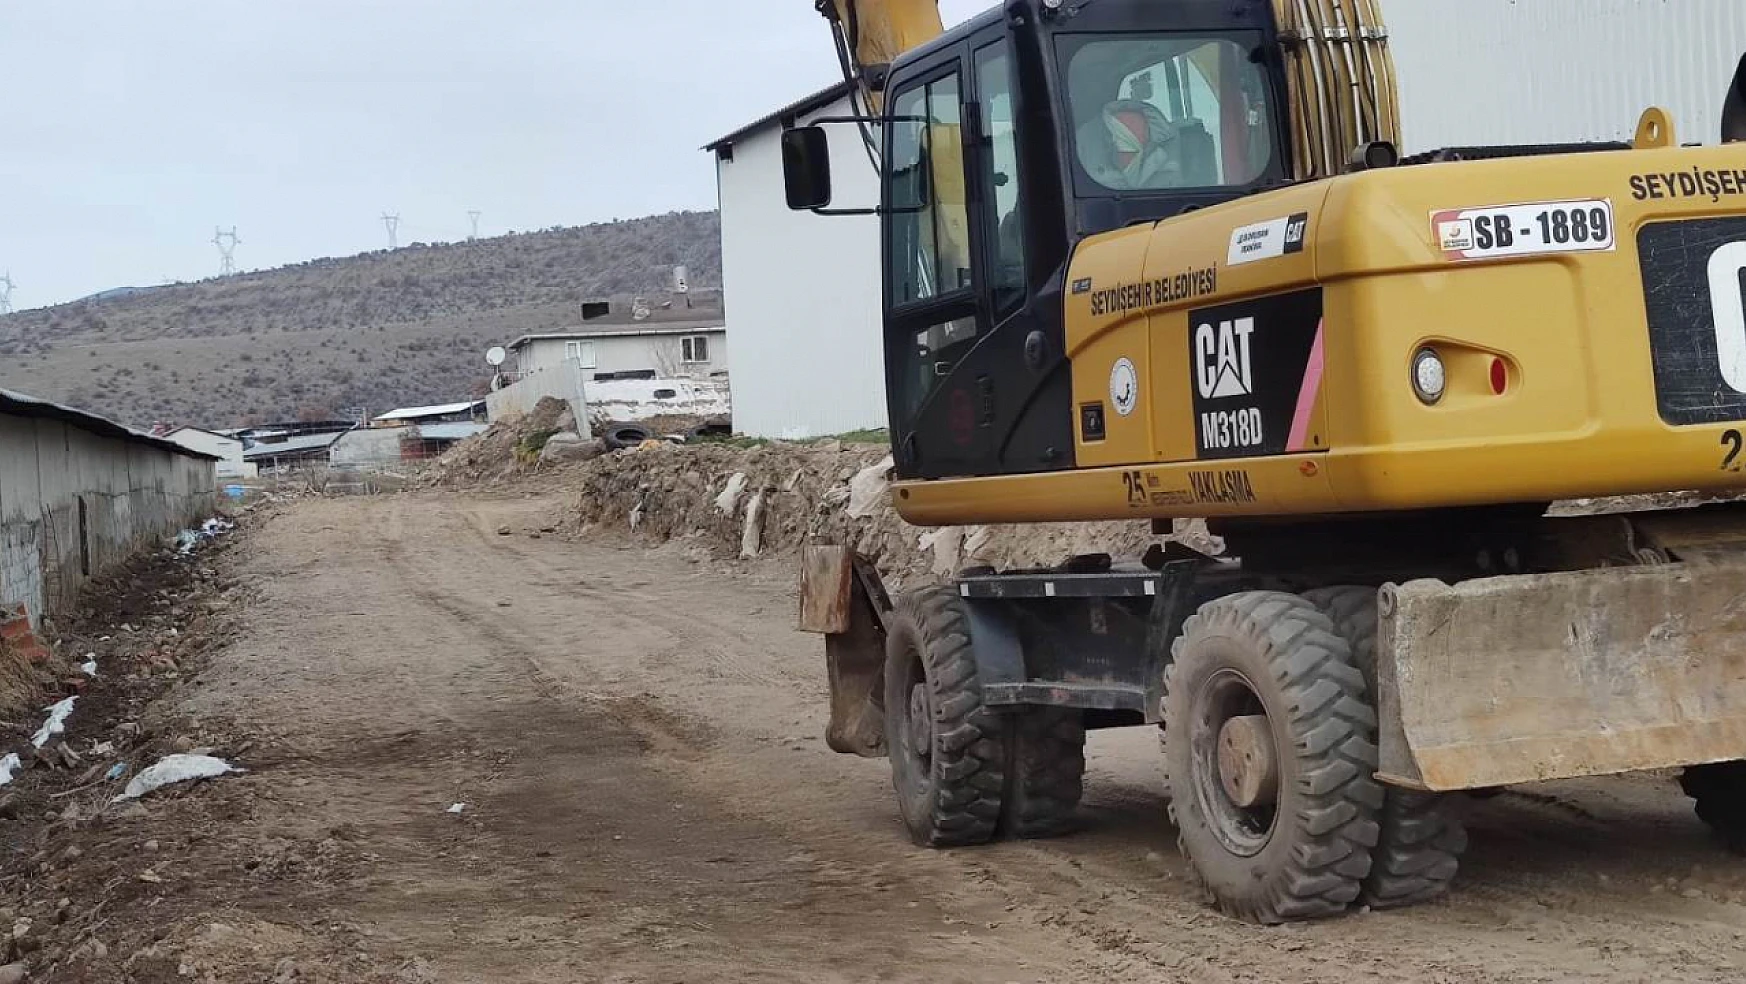 Seydişehir belediyesinin mahalle çalışmaları sürüyor